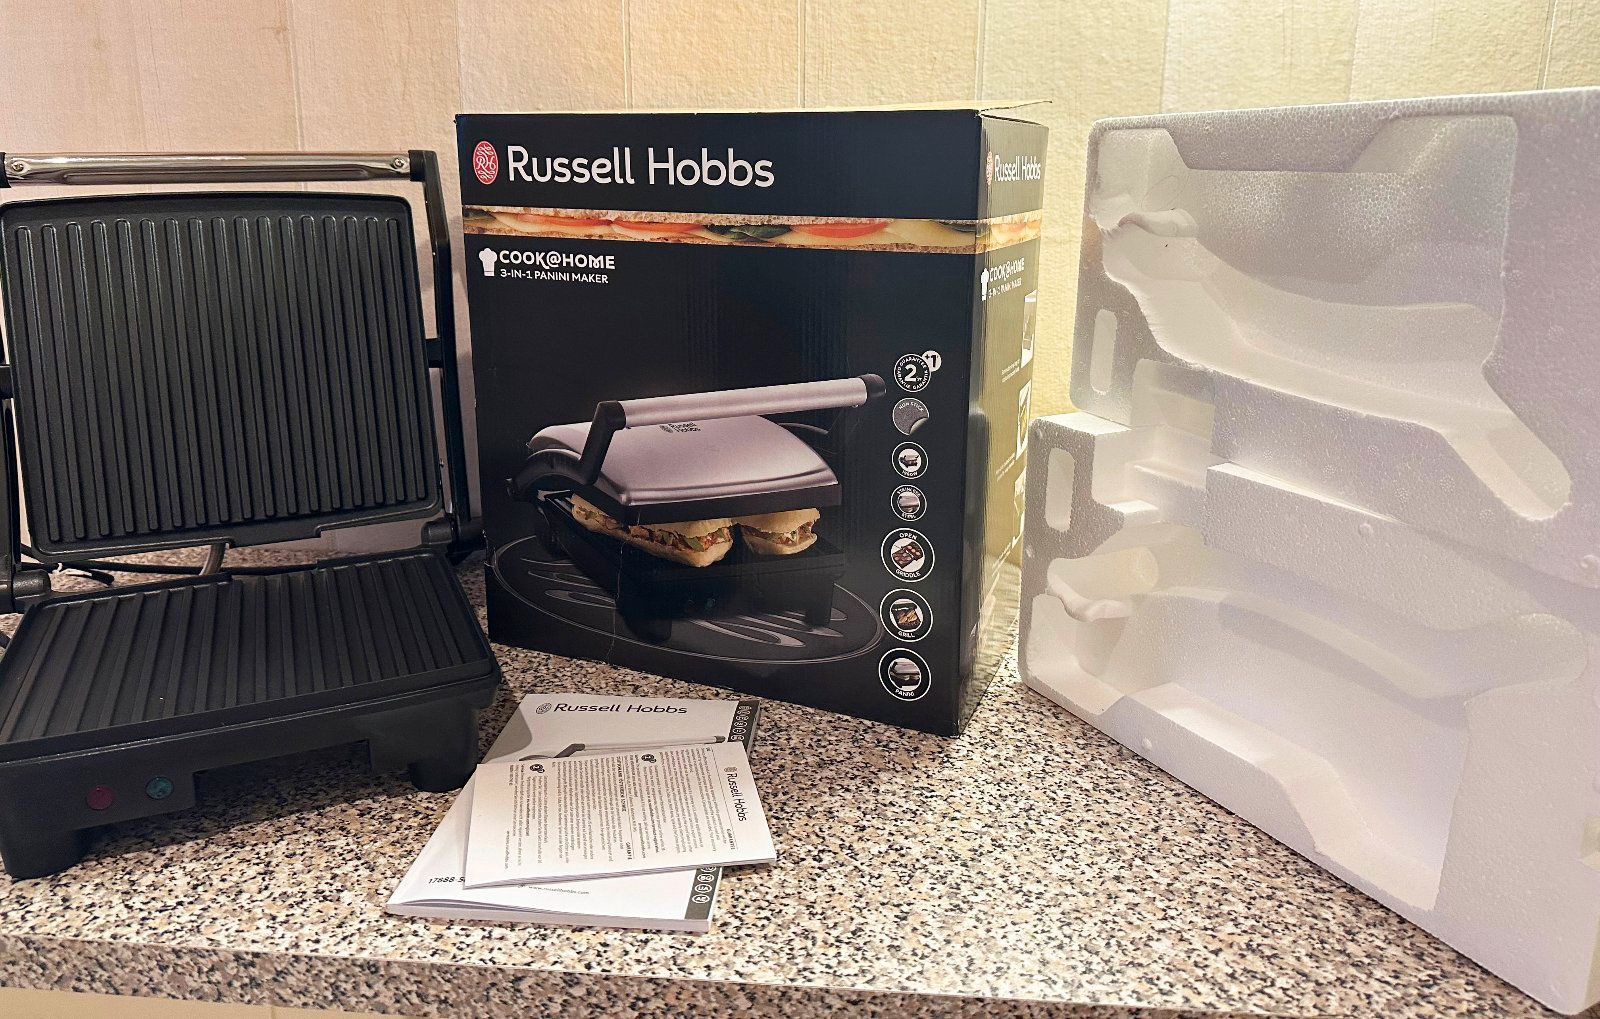 Russell Hobbs Inspire 3-in-1 Kontaktgrill Toaster